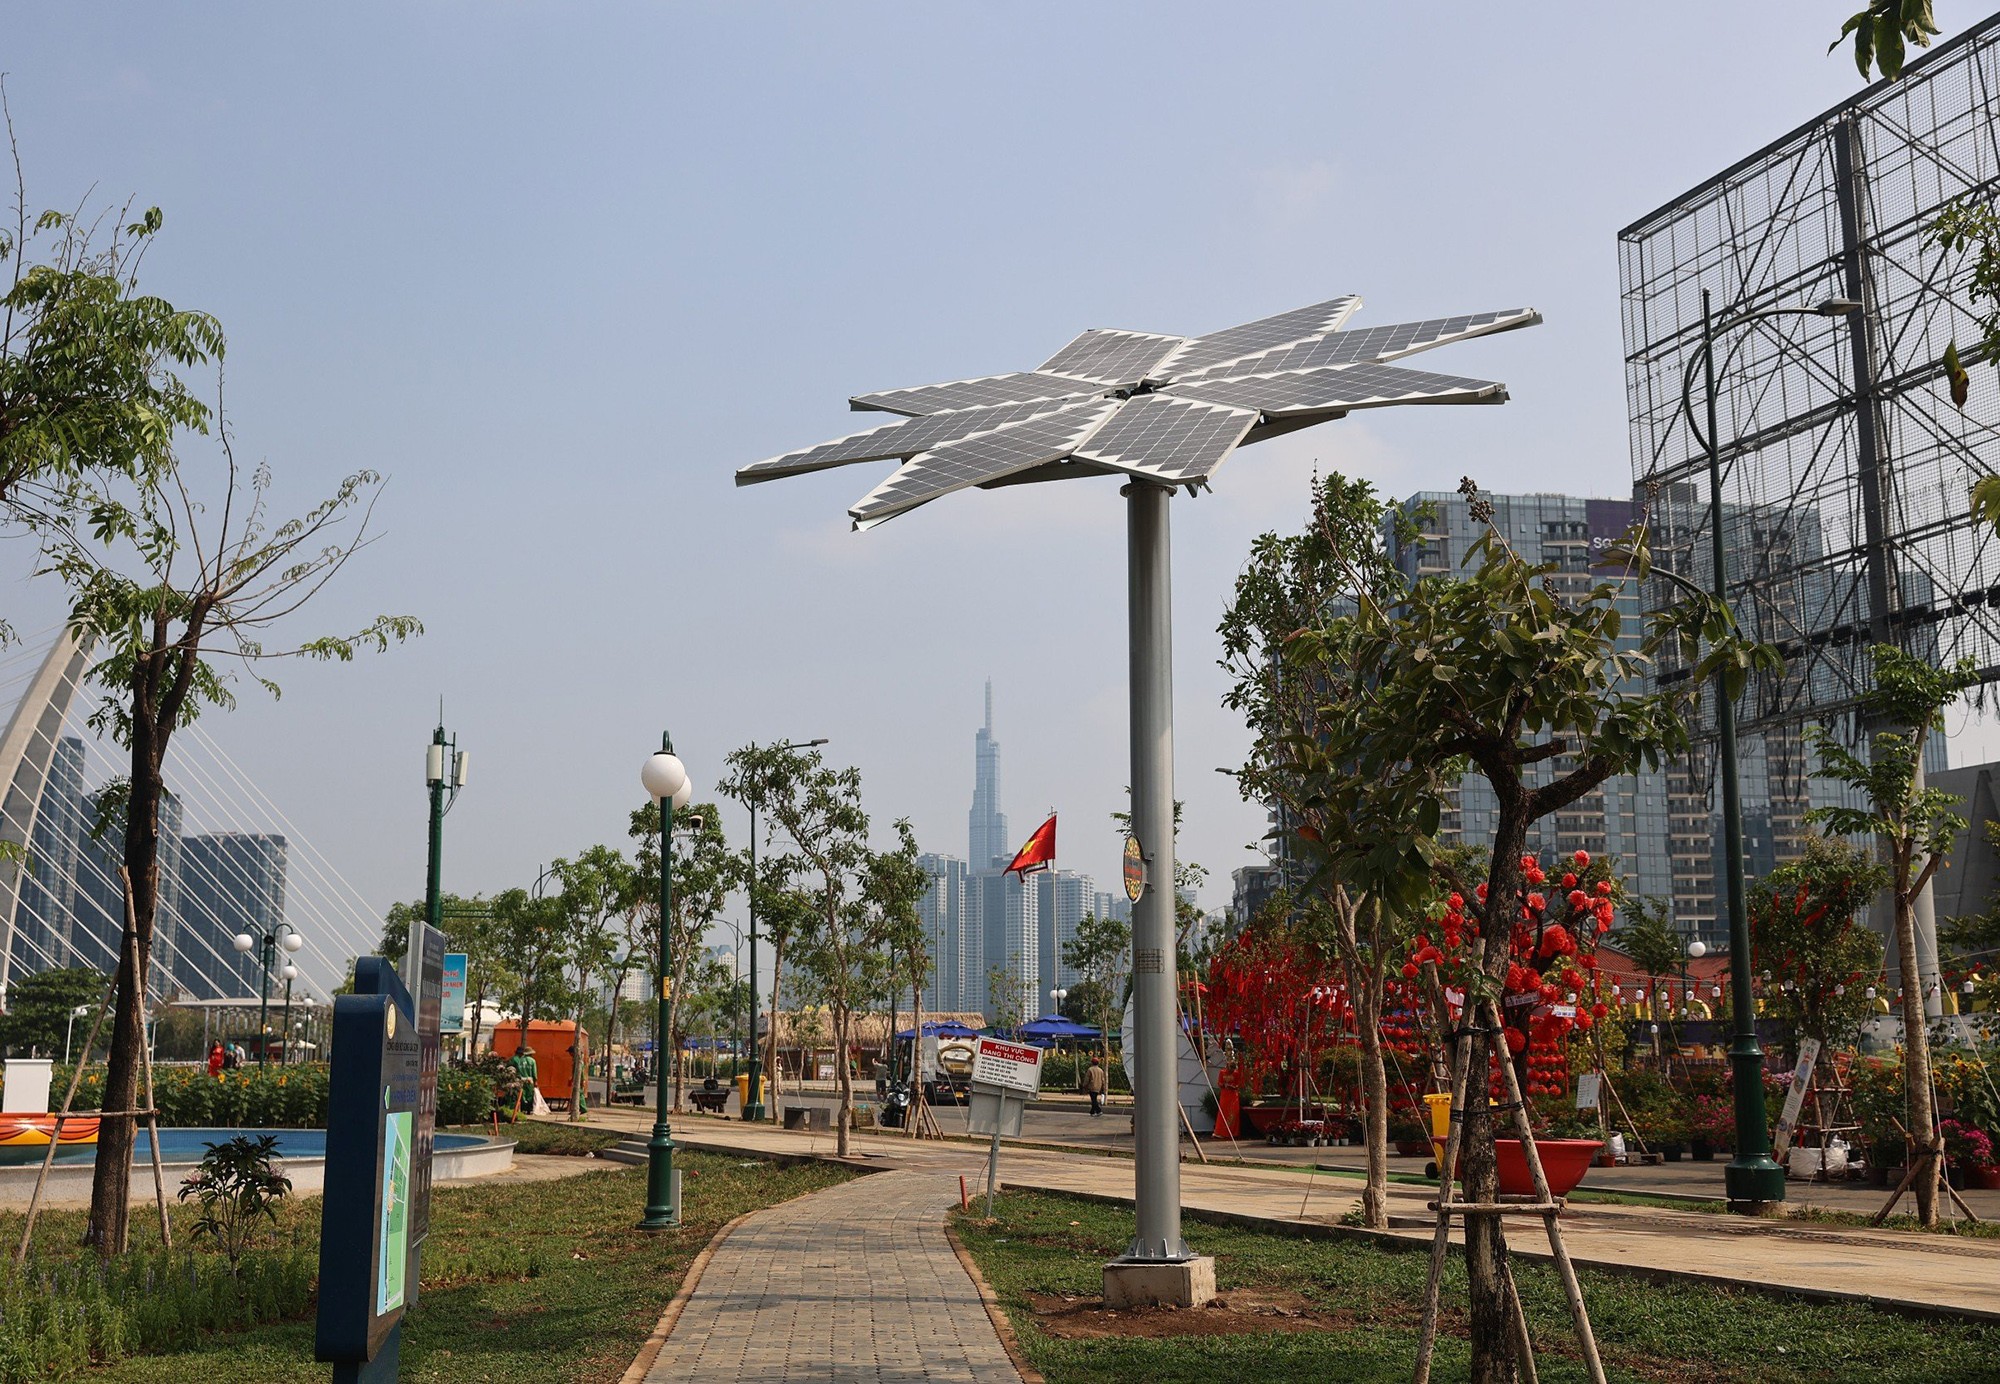 Cây hoa hướng dương năng lượng mặt trời có chiều cao 5m, trị giá 300 triệu đồng, có khả năng phát điện sạch cung cấp cho các thiết bị điện dân dụng trong công viên vừa được đơn vị thi công vận hành, bàn giao cho UBND TP Thủ Đức.